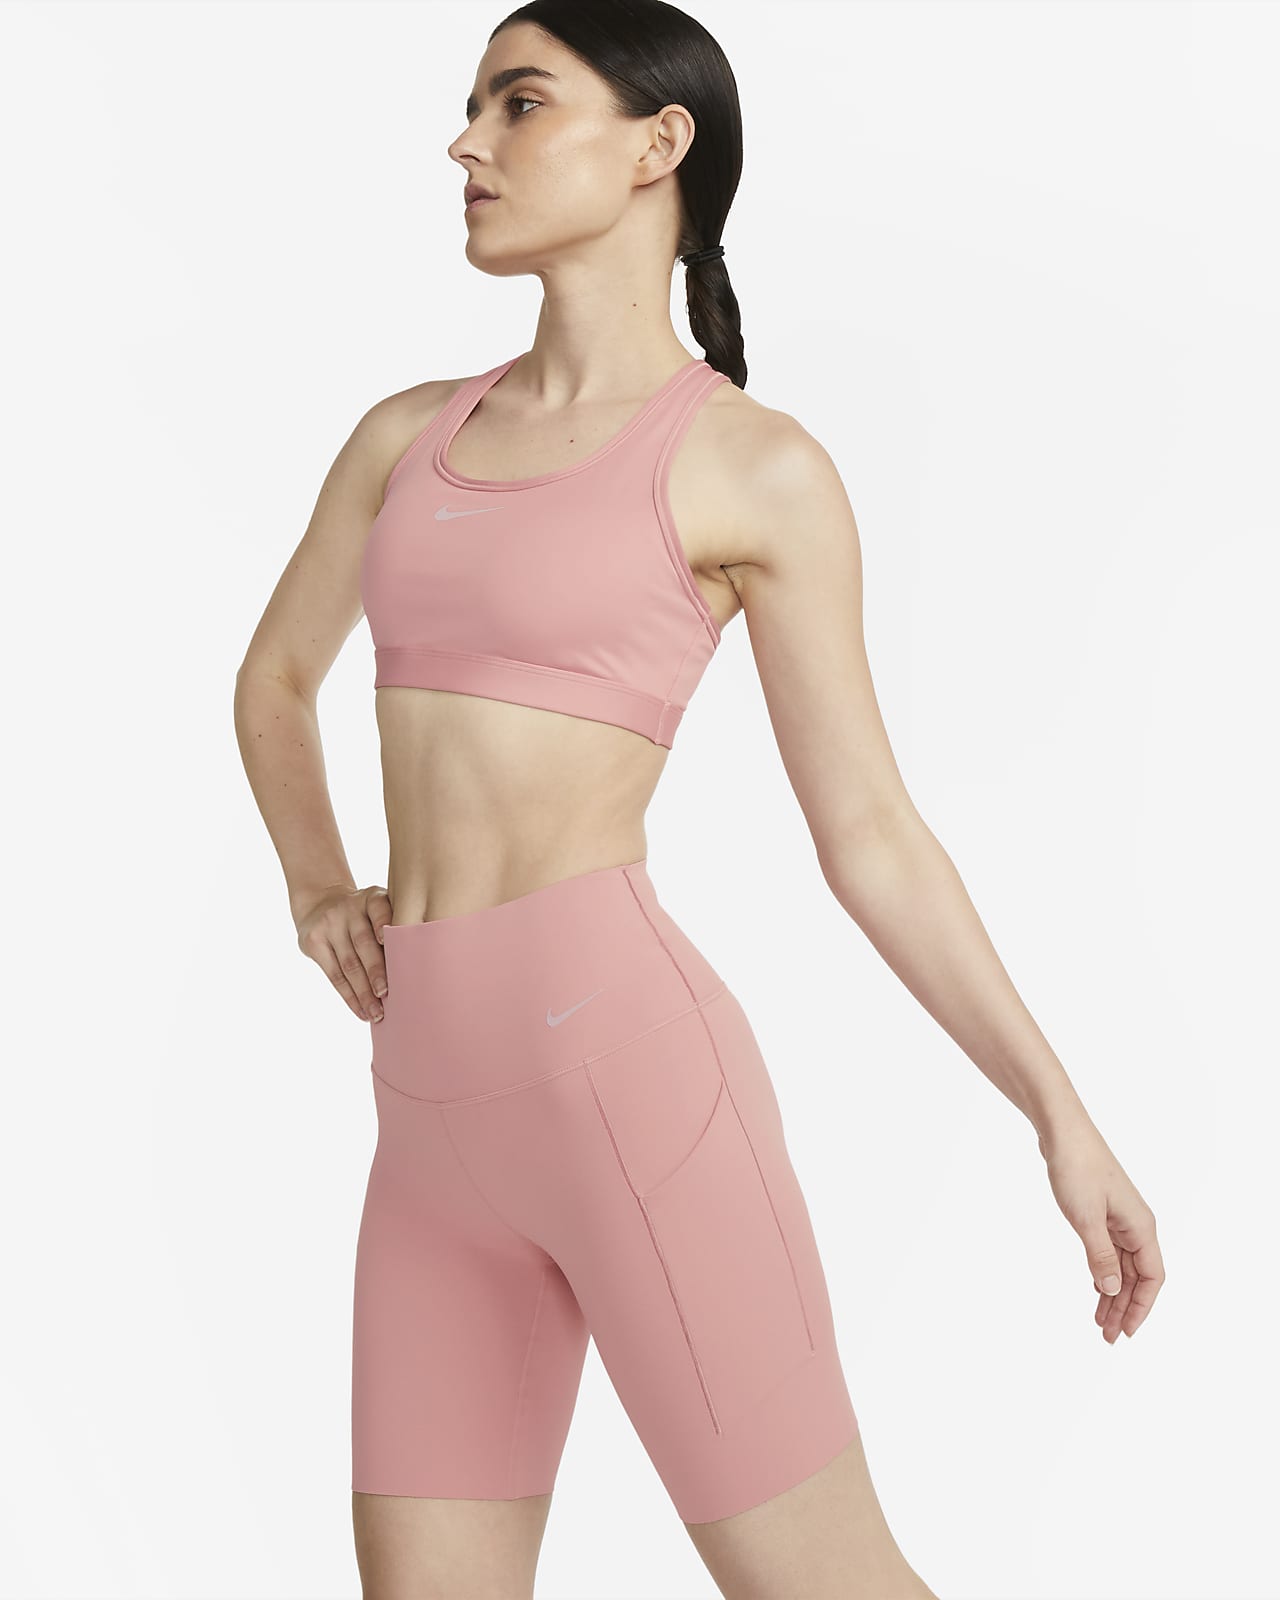 Nike Universa-cykelshorts (20 cm) med medium støtte, høj talje og lommer til kvinder